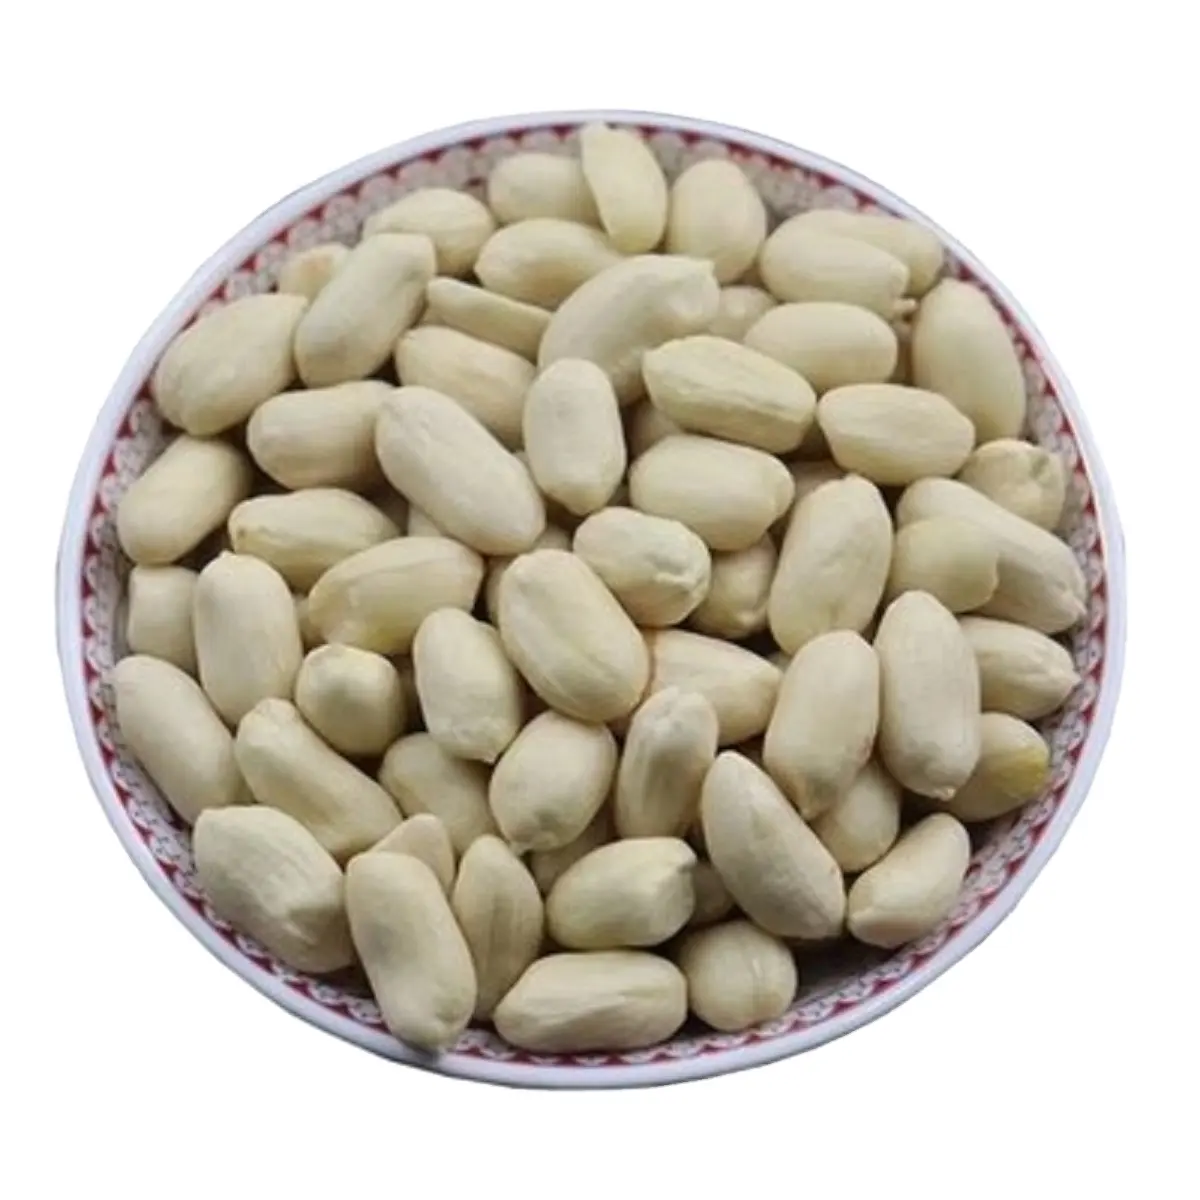 Buccia rossa di origine cinese e arachidi sbollentate tutti i frutti secchi 24/28 noccioline lavorate crude